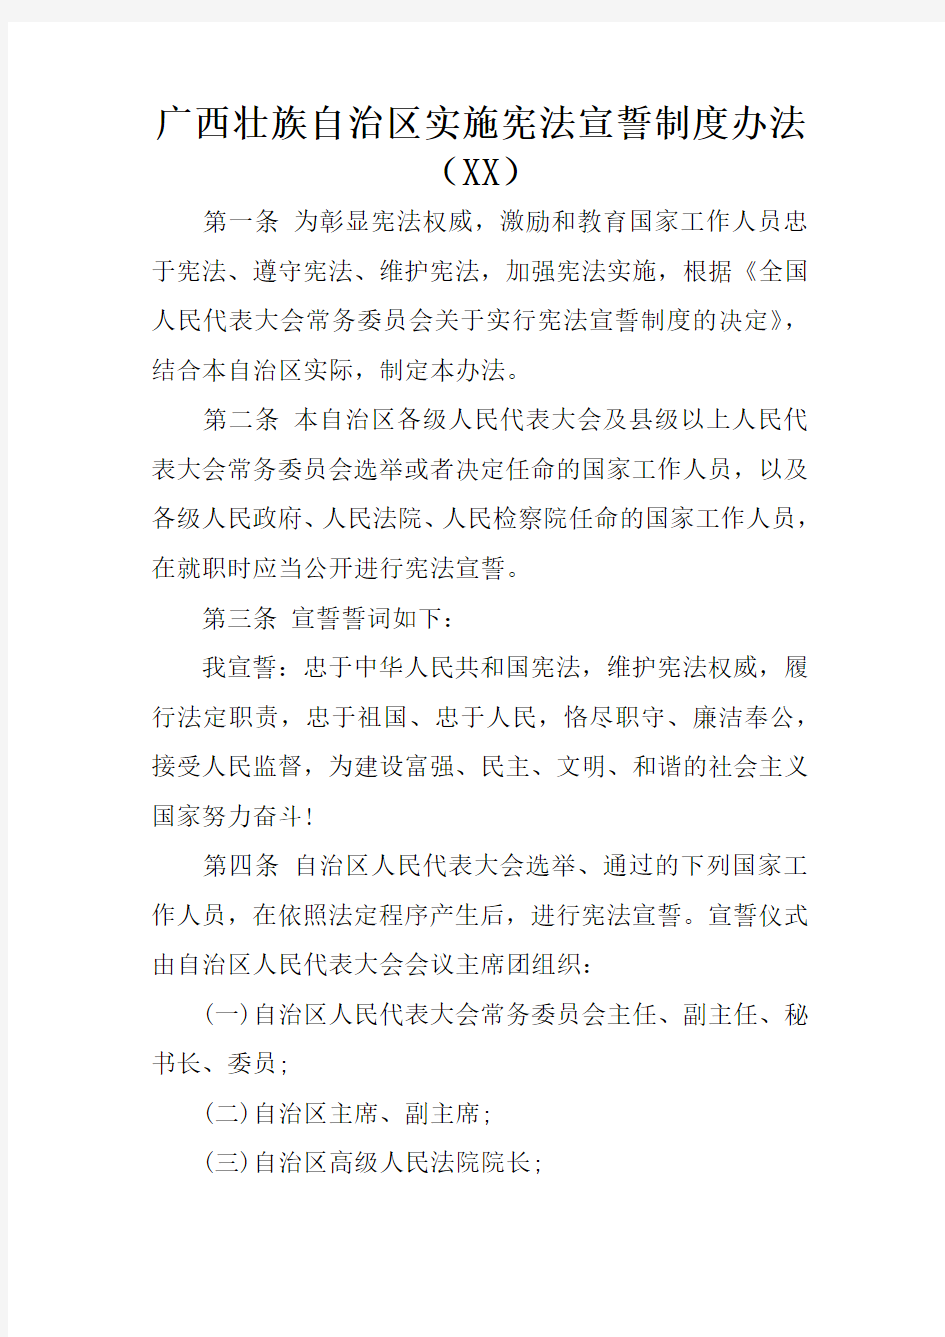 广西壮族自治区实施宪法宣誓制度办法(XX)